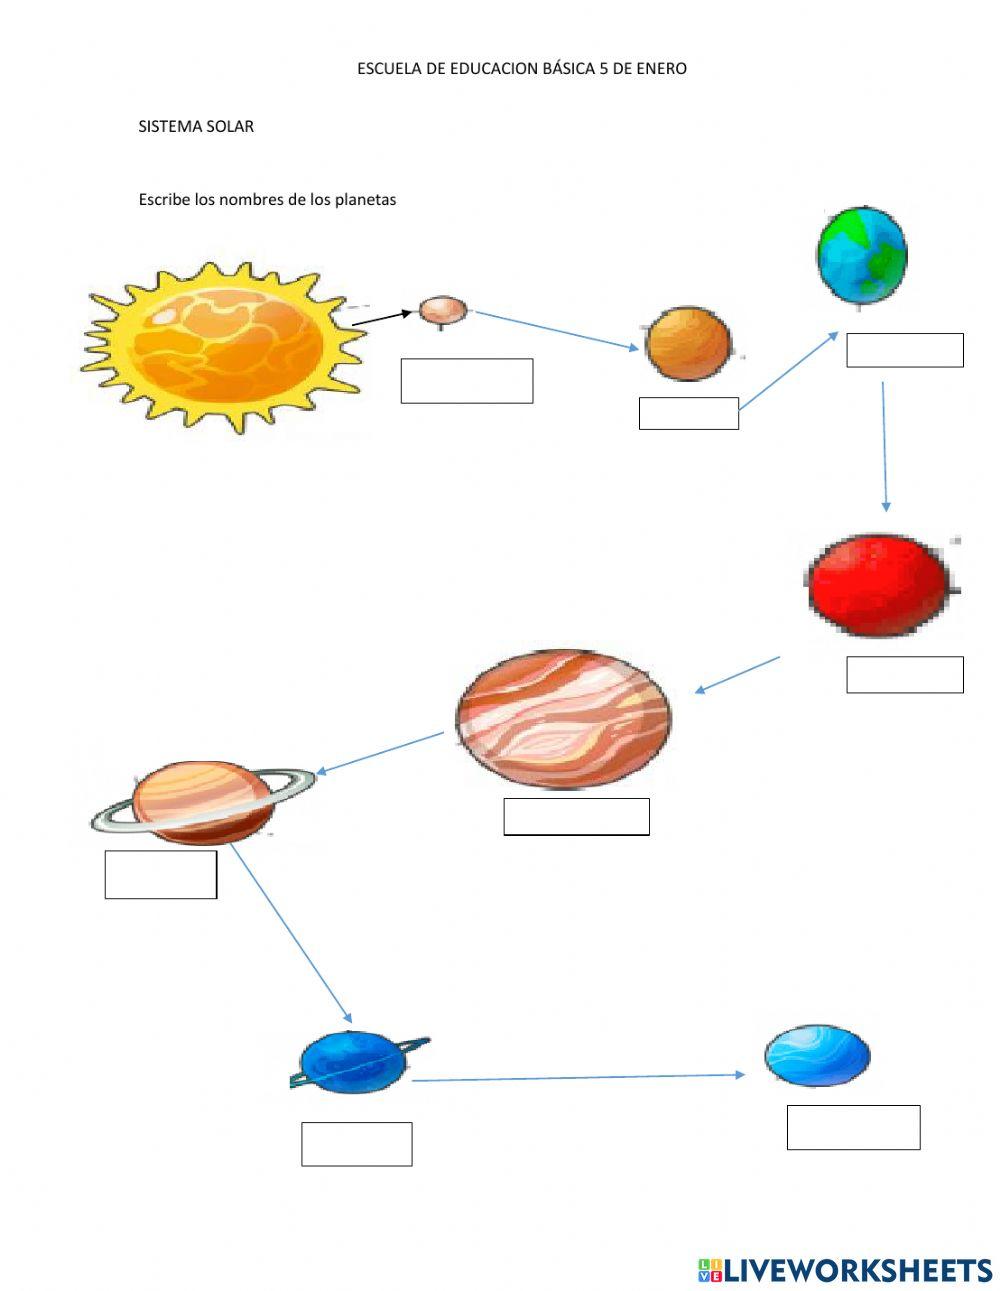 El sistema Solar